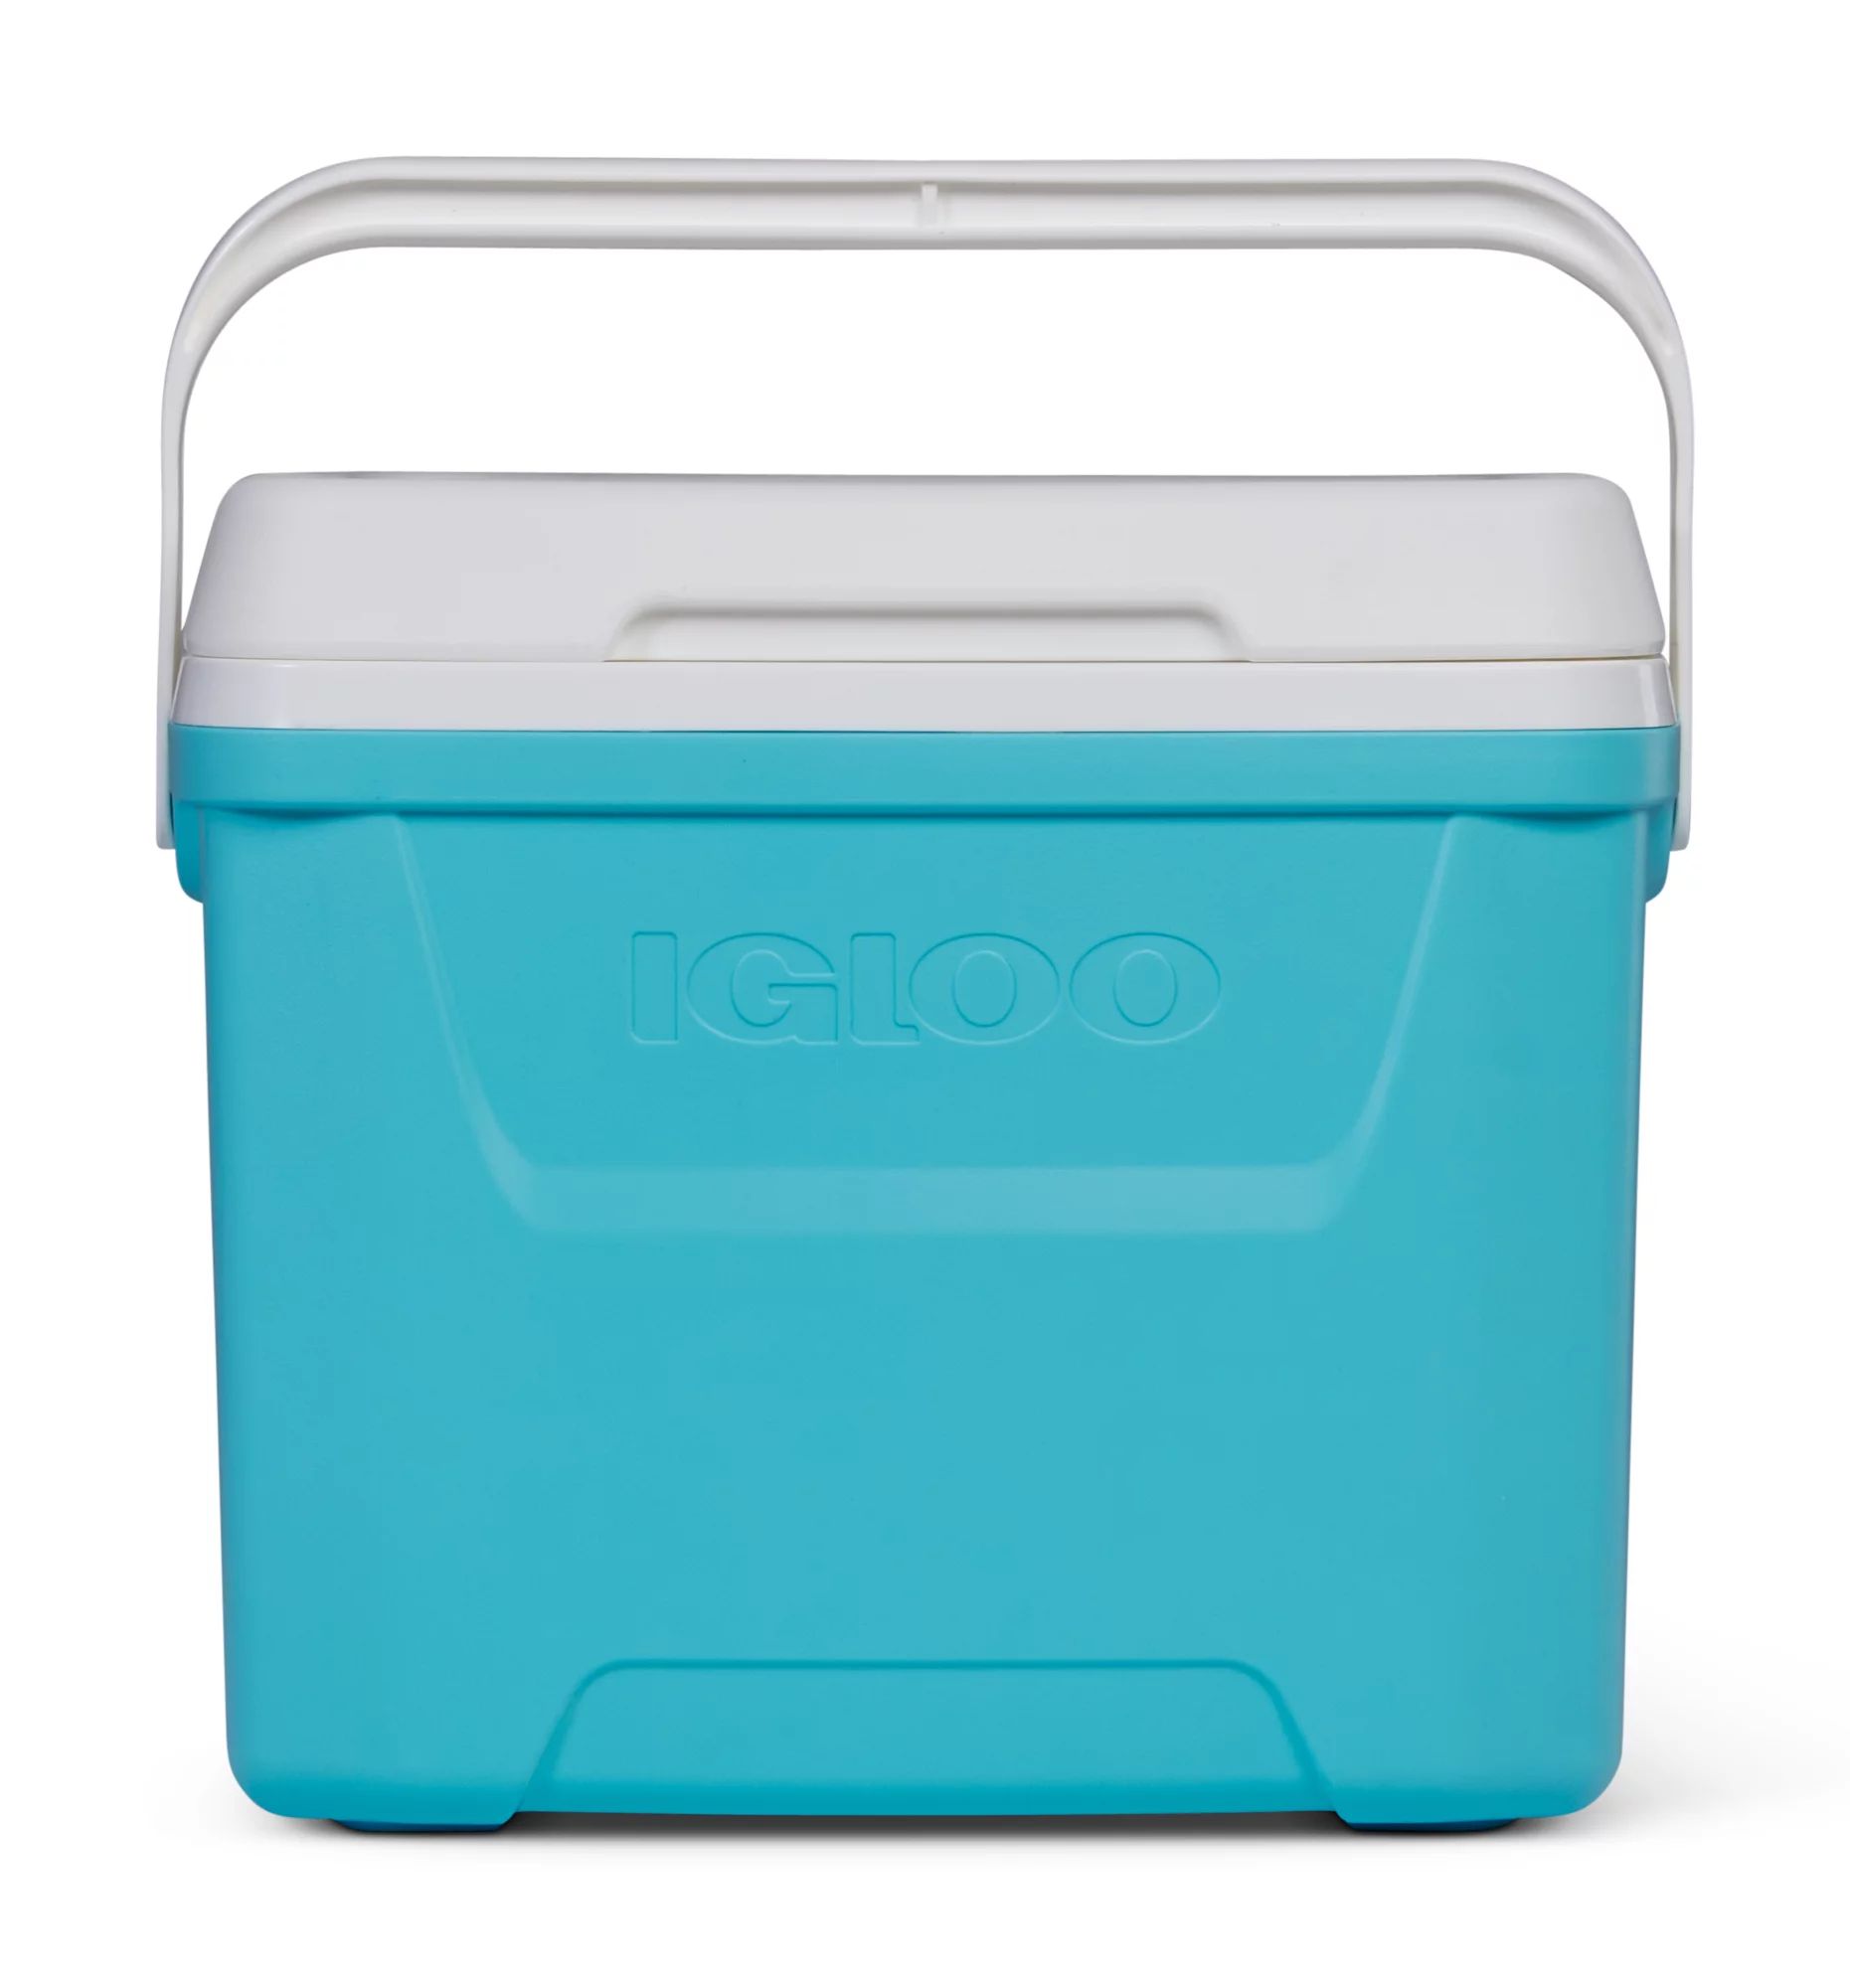 Igloo 28 qt. Hard Sided Ice Chest Cooler, Aqua Blue and White - Walmart.com | Walmart (US)